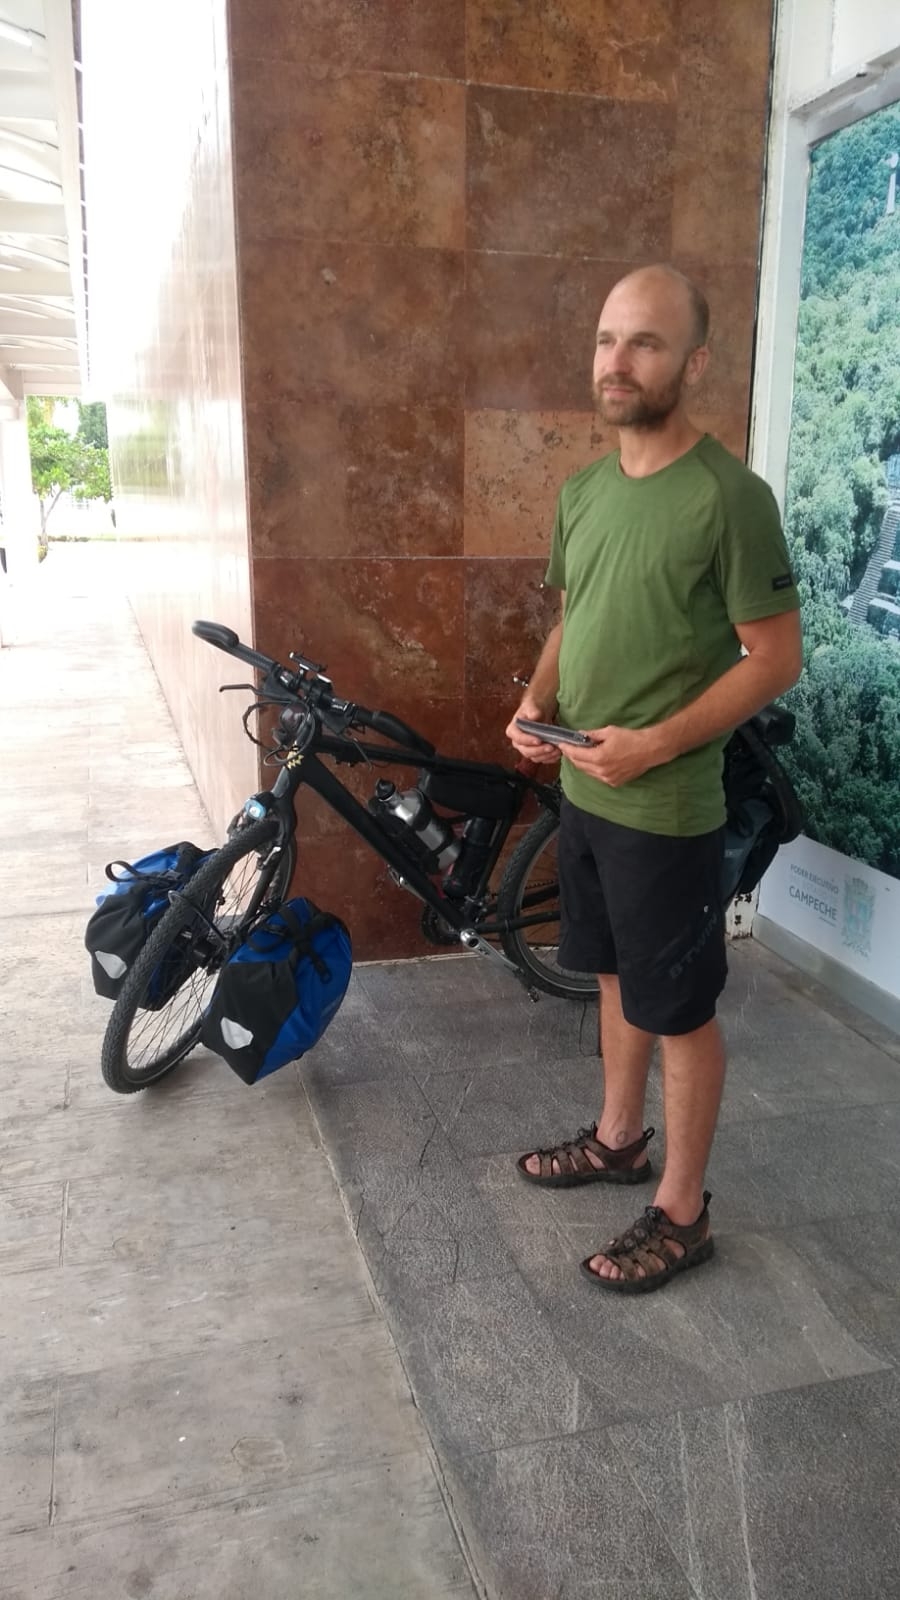 Turista belga arriba a Campeche; recorrerá México en bicicleta